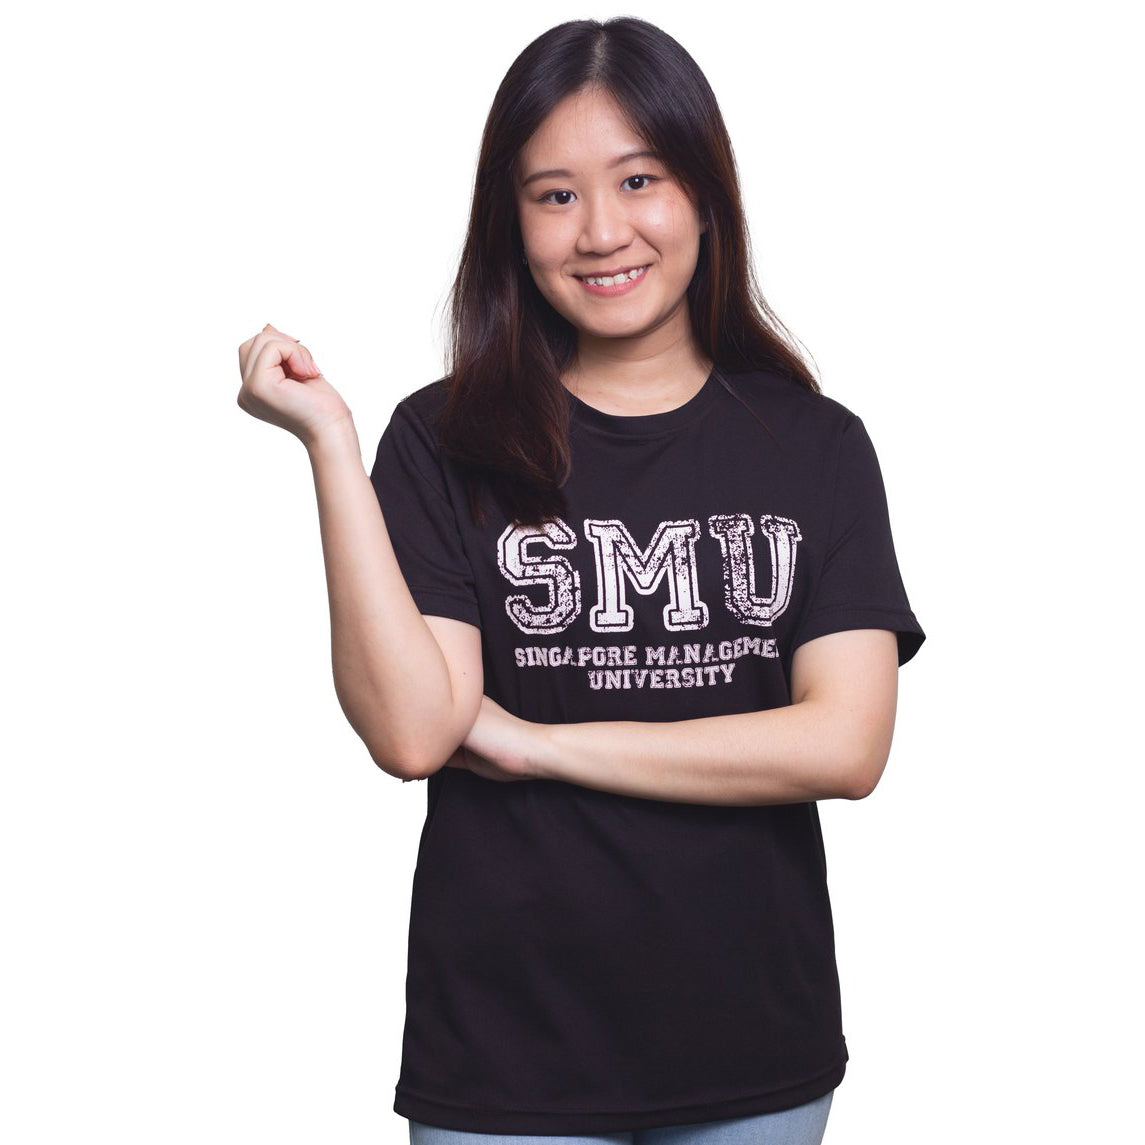 Classic SMU Organic Cotton T-shirt.